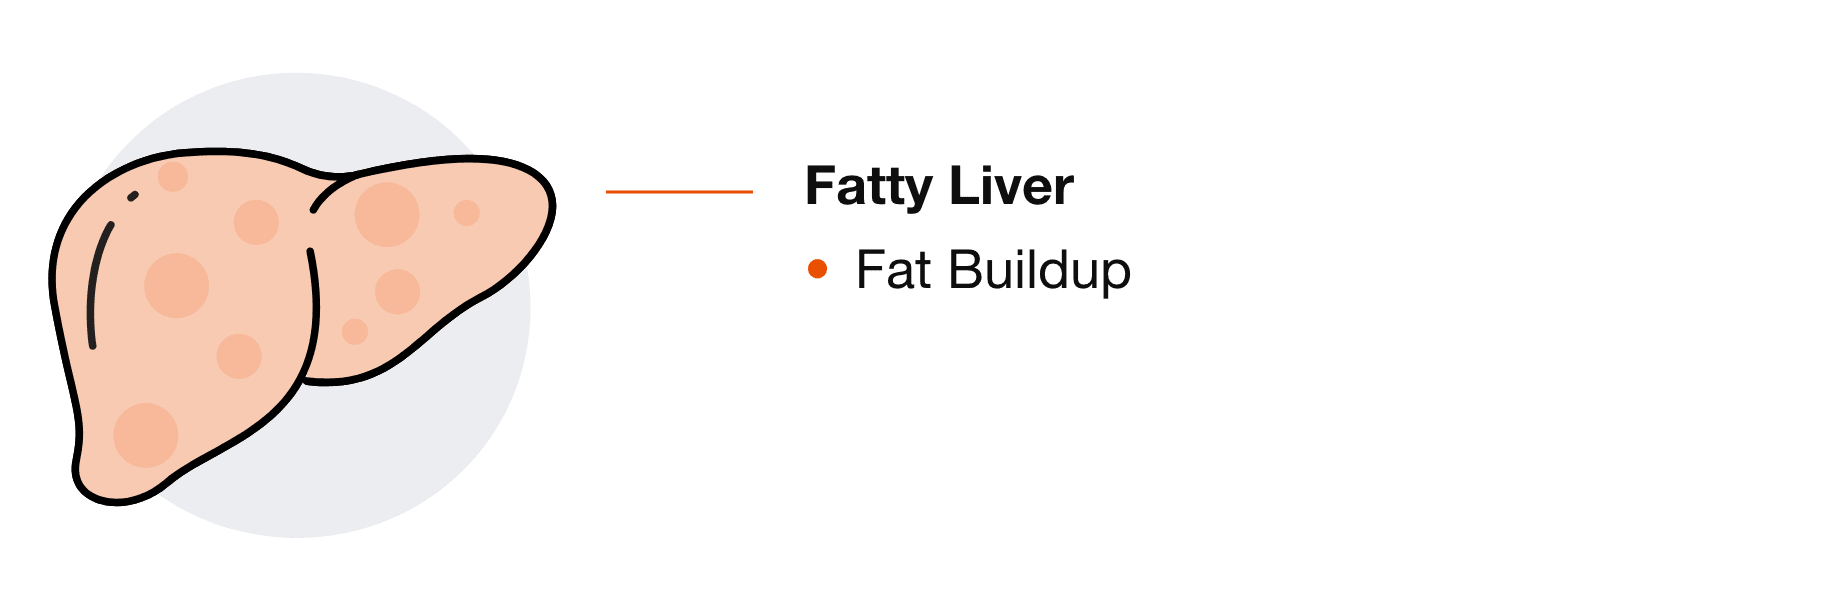 Fatty Liver: Fat Buildup